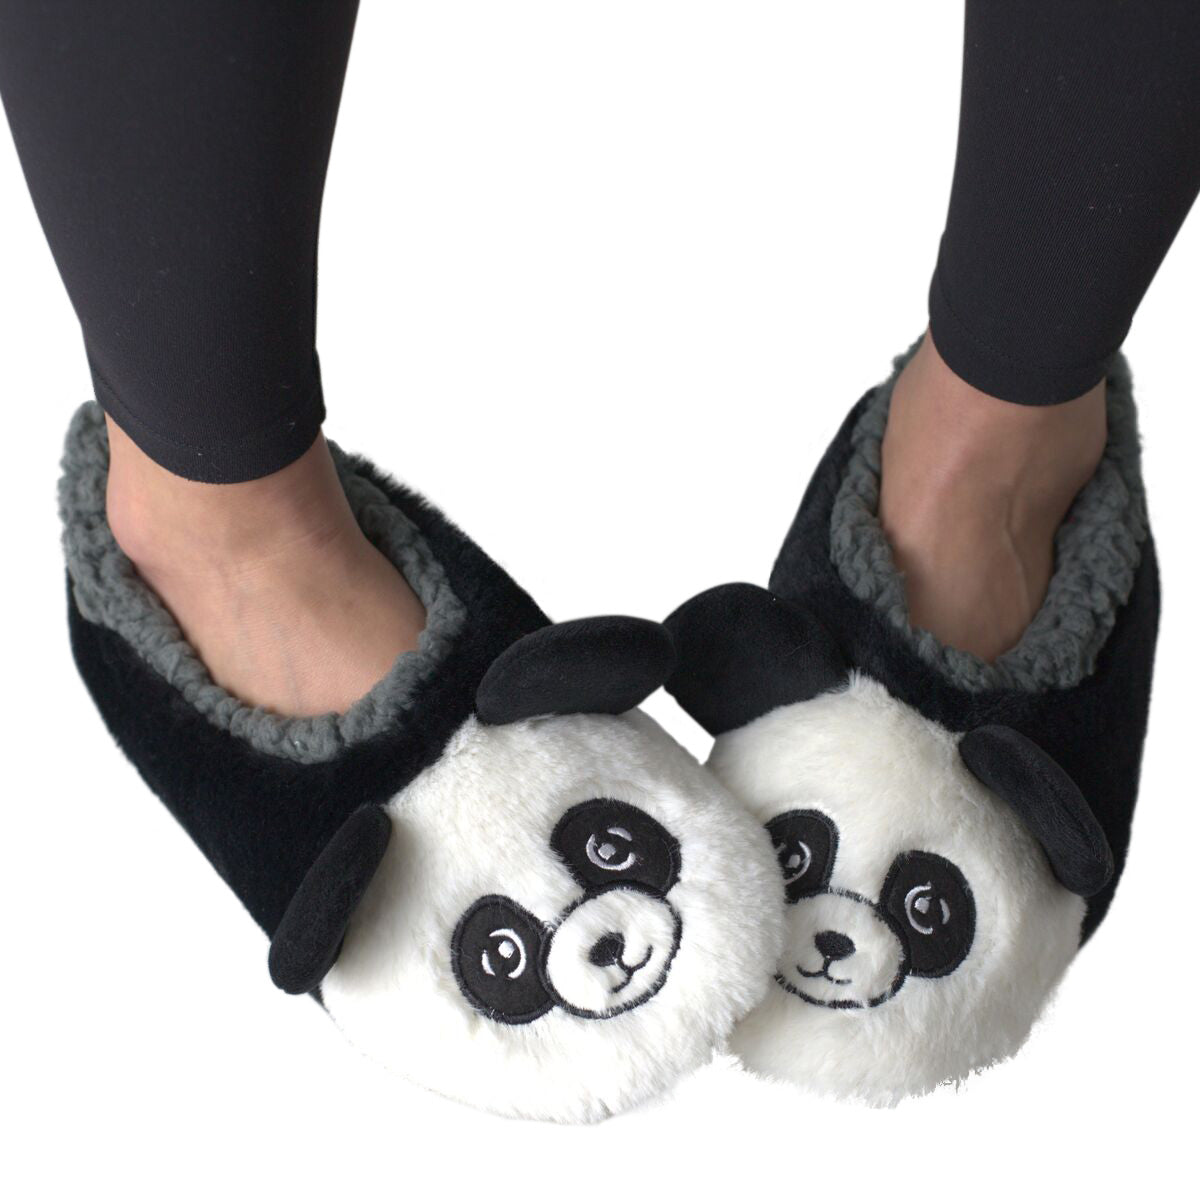 Pantuflas mullidas de panda